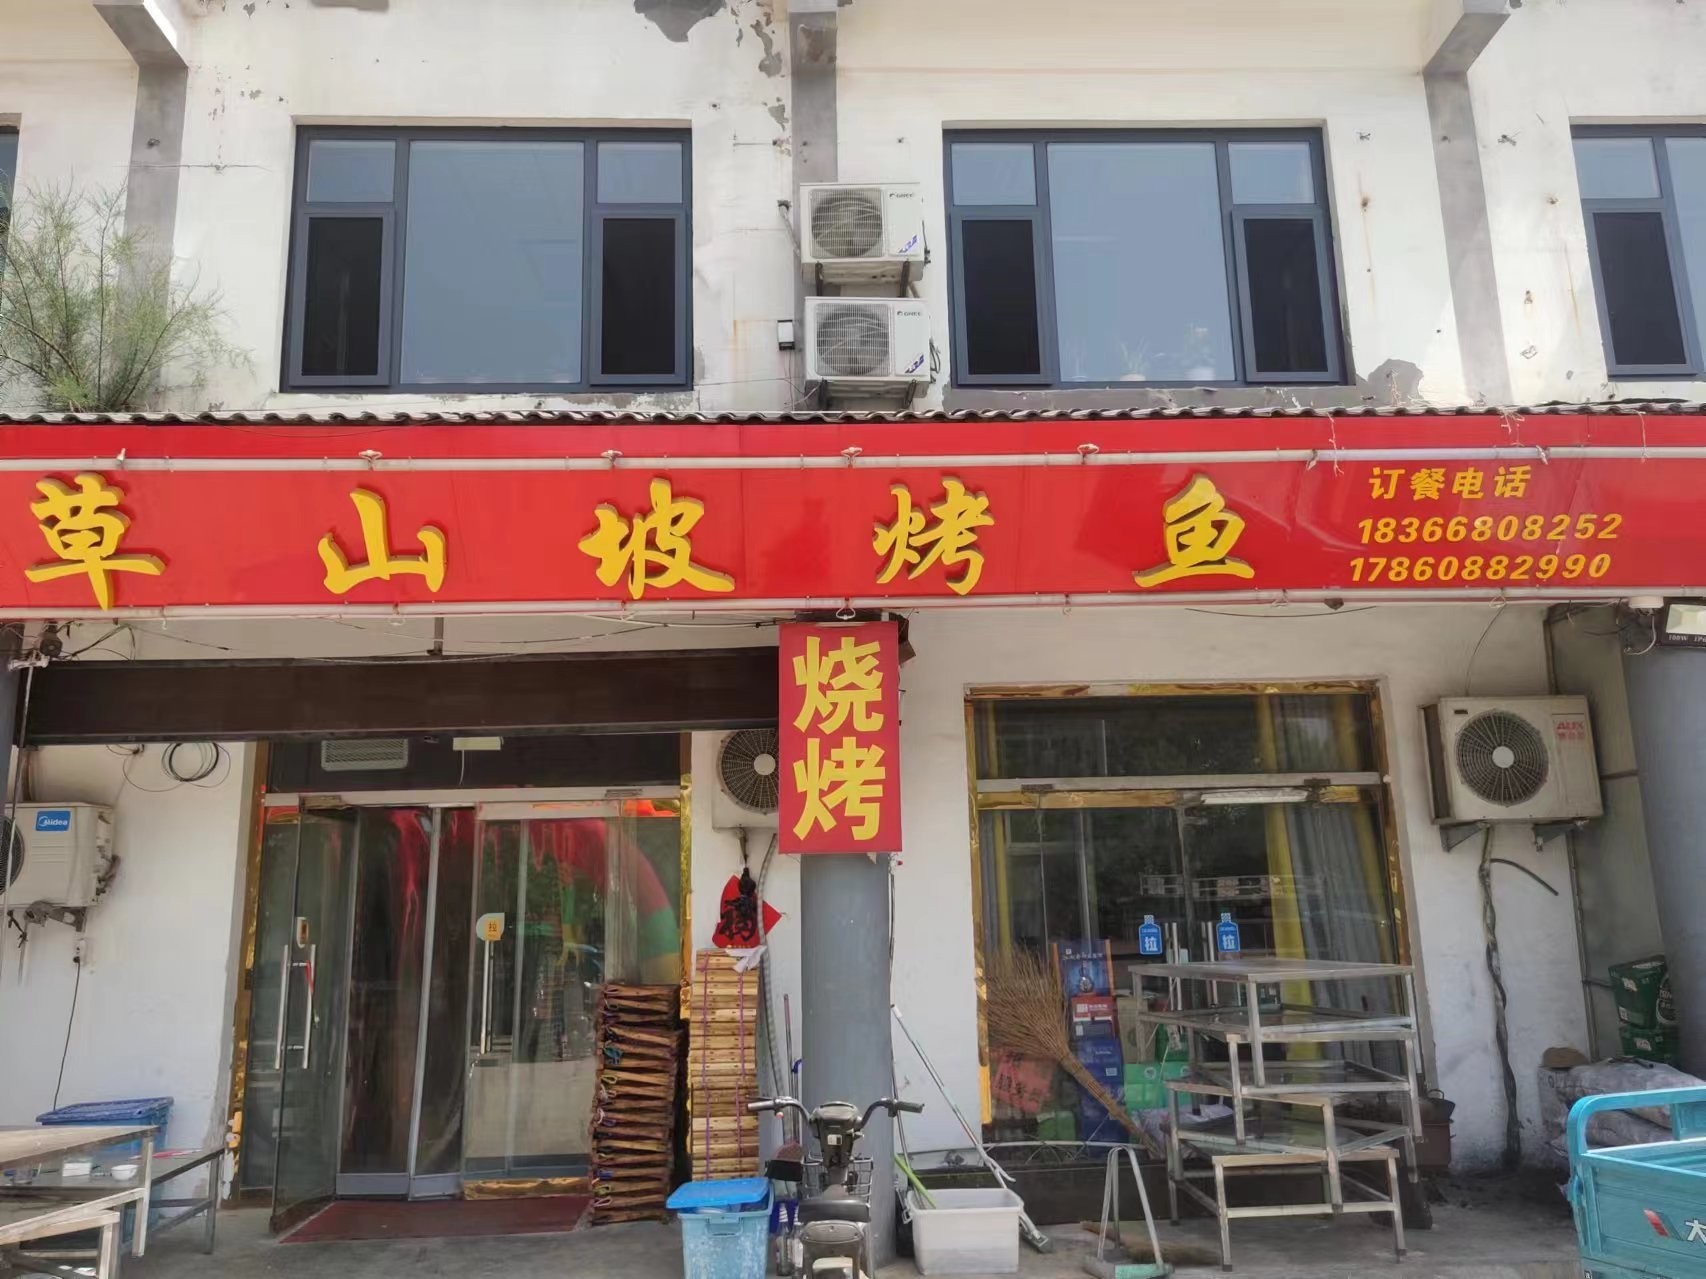   草山坡烤鱼位于无棣县新区武装部西沿街楼，也就是无棣县新区夜市，主营烤鱼和烧烤